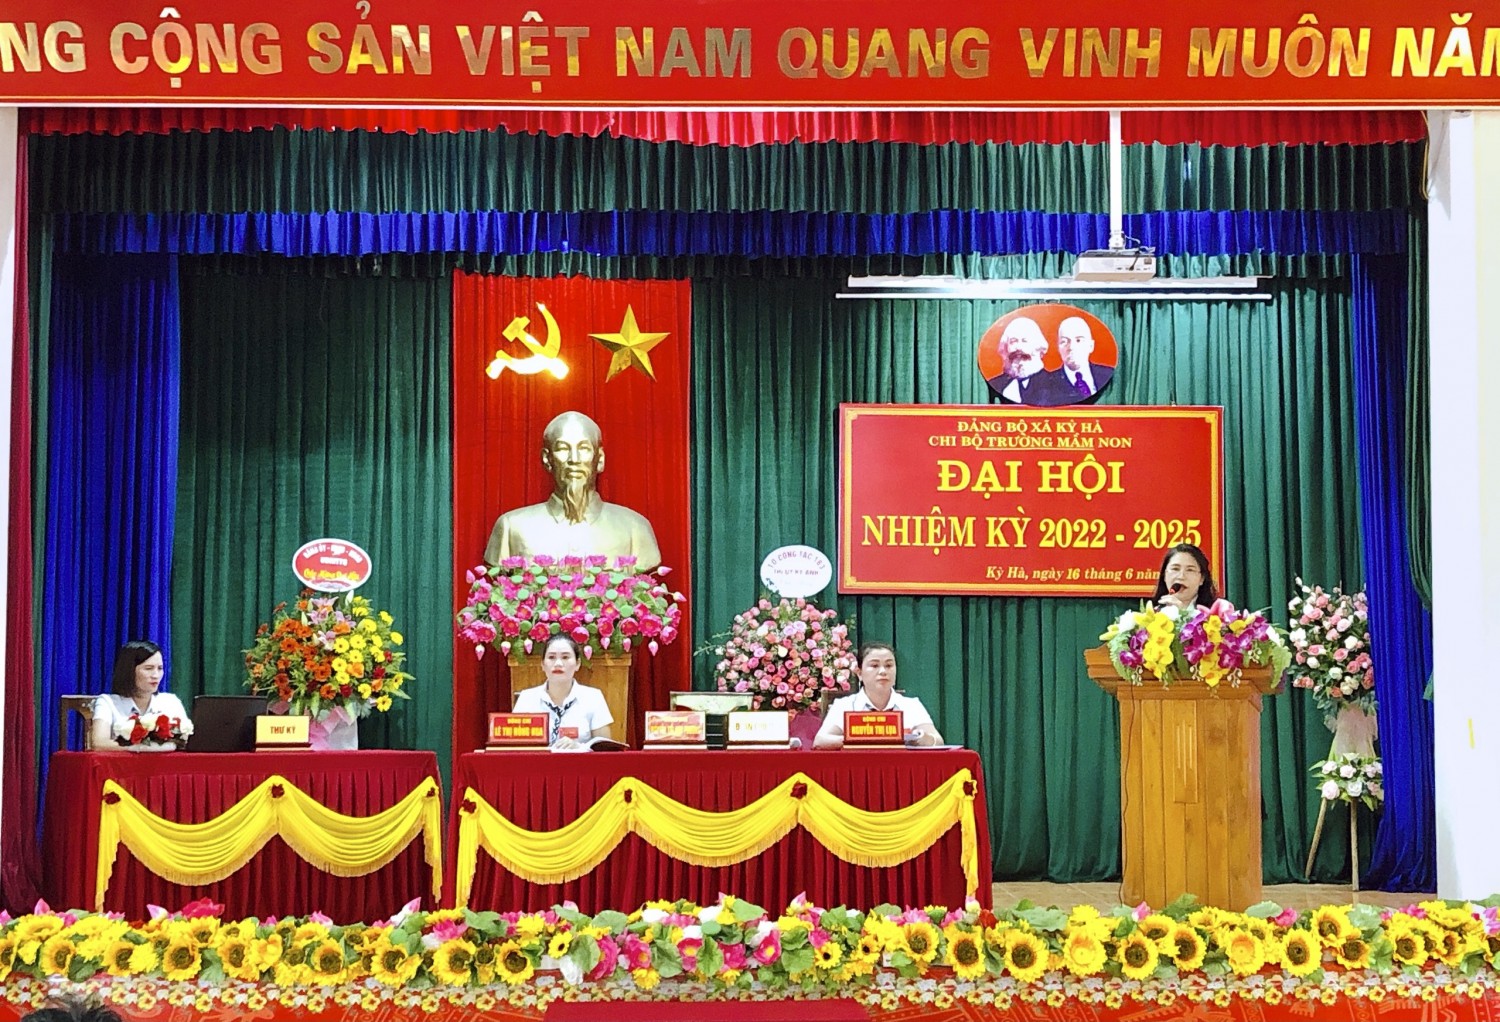 đ/c Nguyễn Thị Ki Phương - Khai mạc